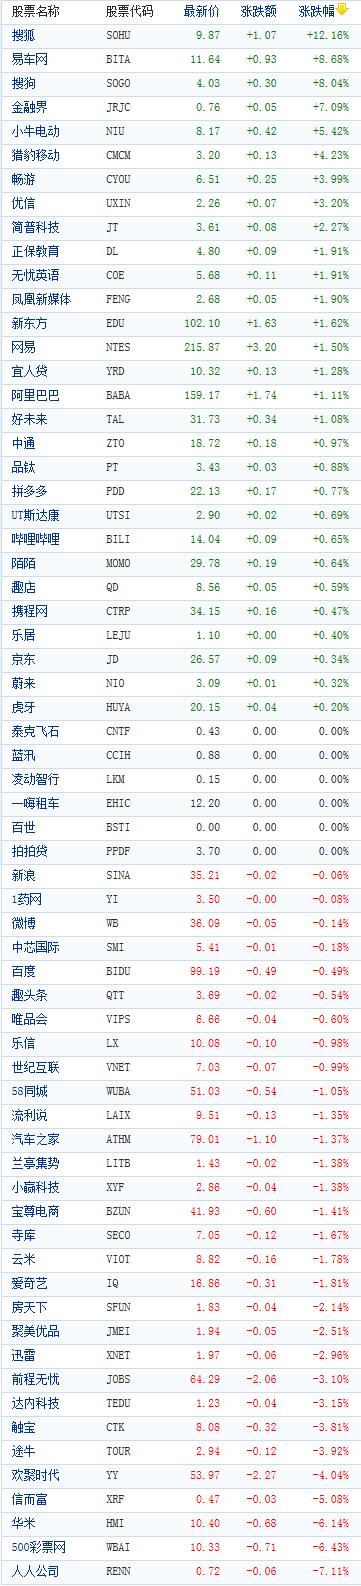 中国概念股周三收盘涨跌互现搜狐大涨逾12%